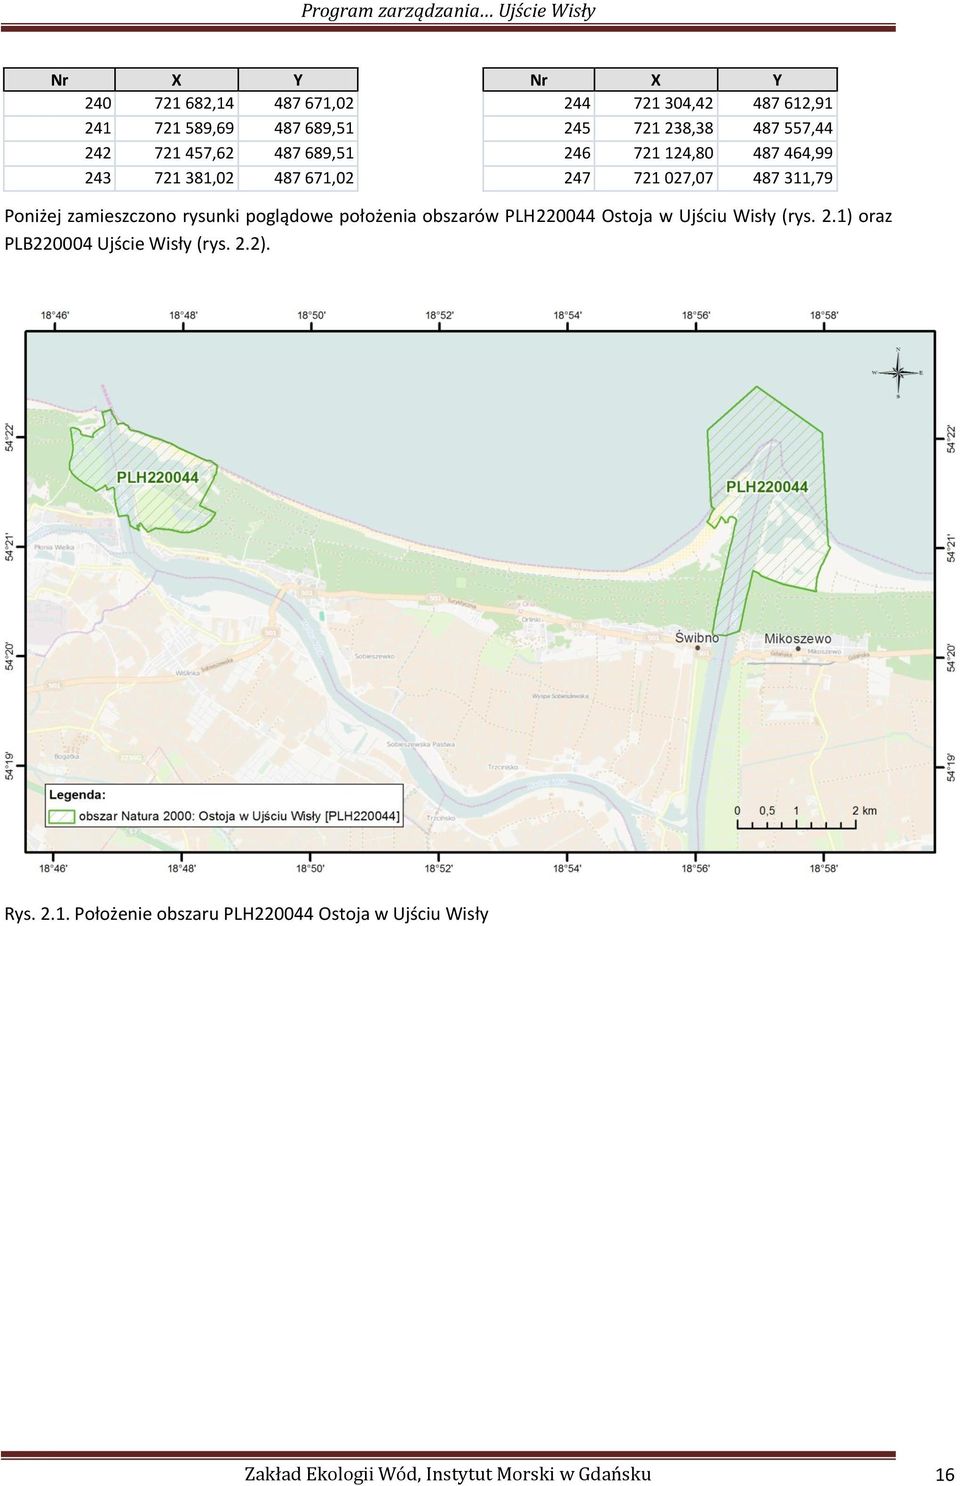 zamieszczono rysunki poglądowe położenia obszarów PLH220044 Ostoja w Ujściu Wisły (rys. 2.